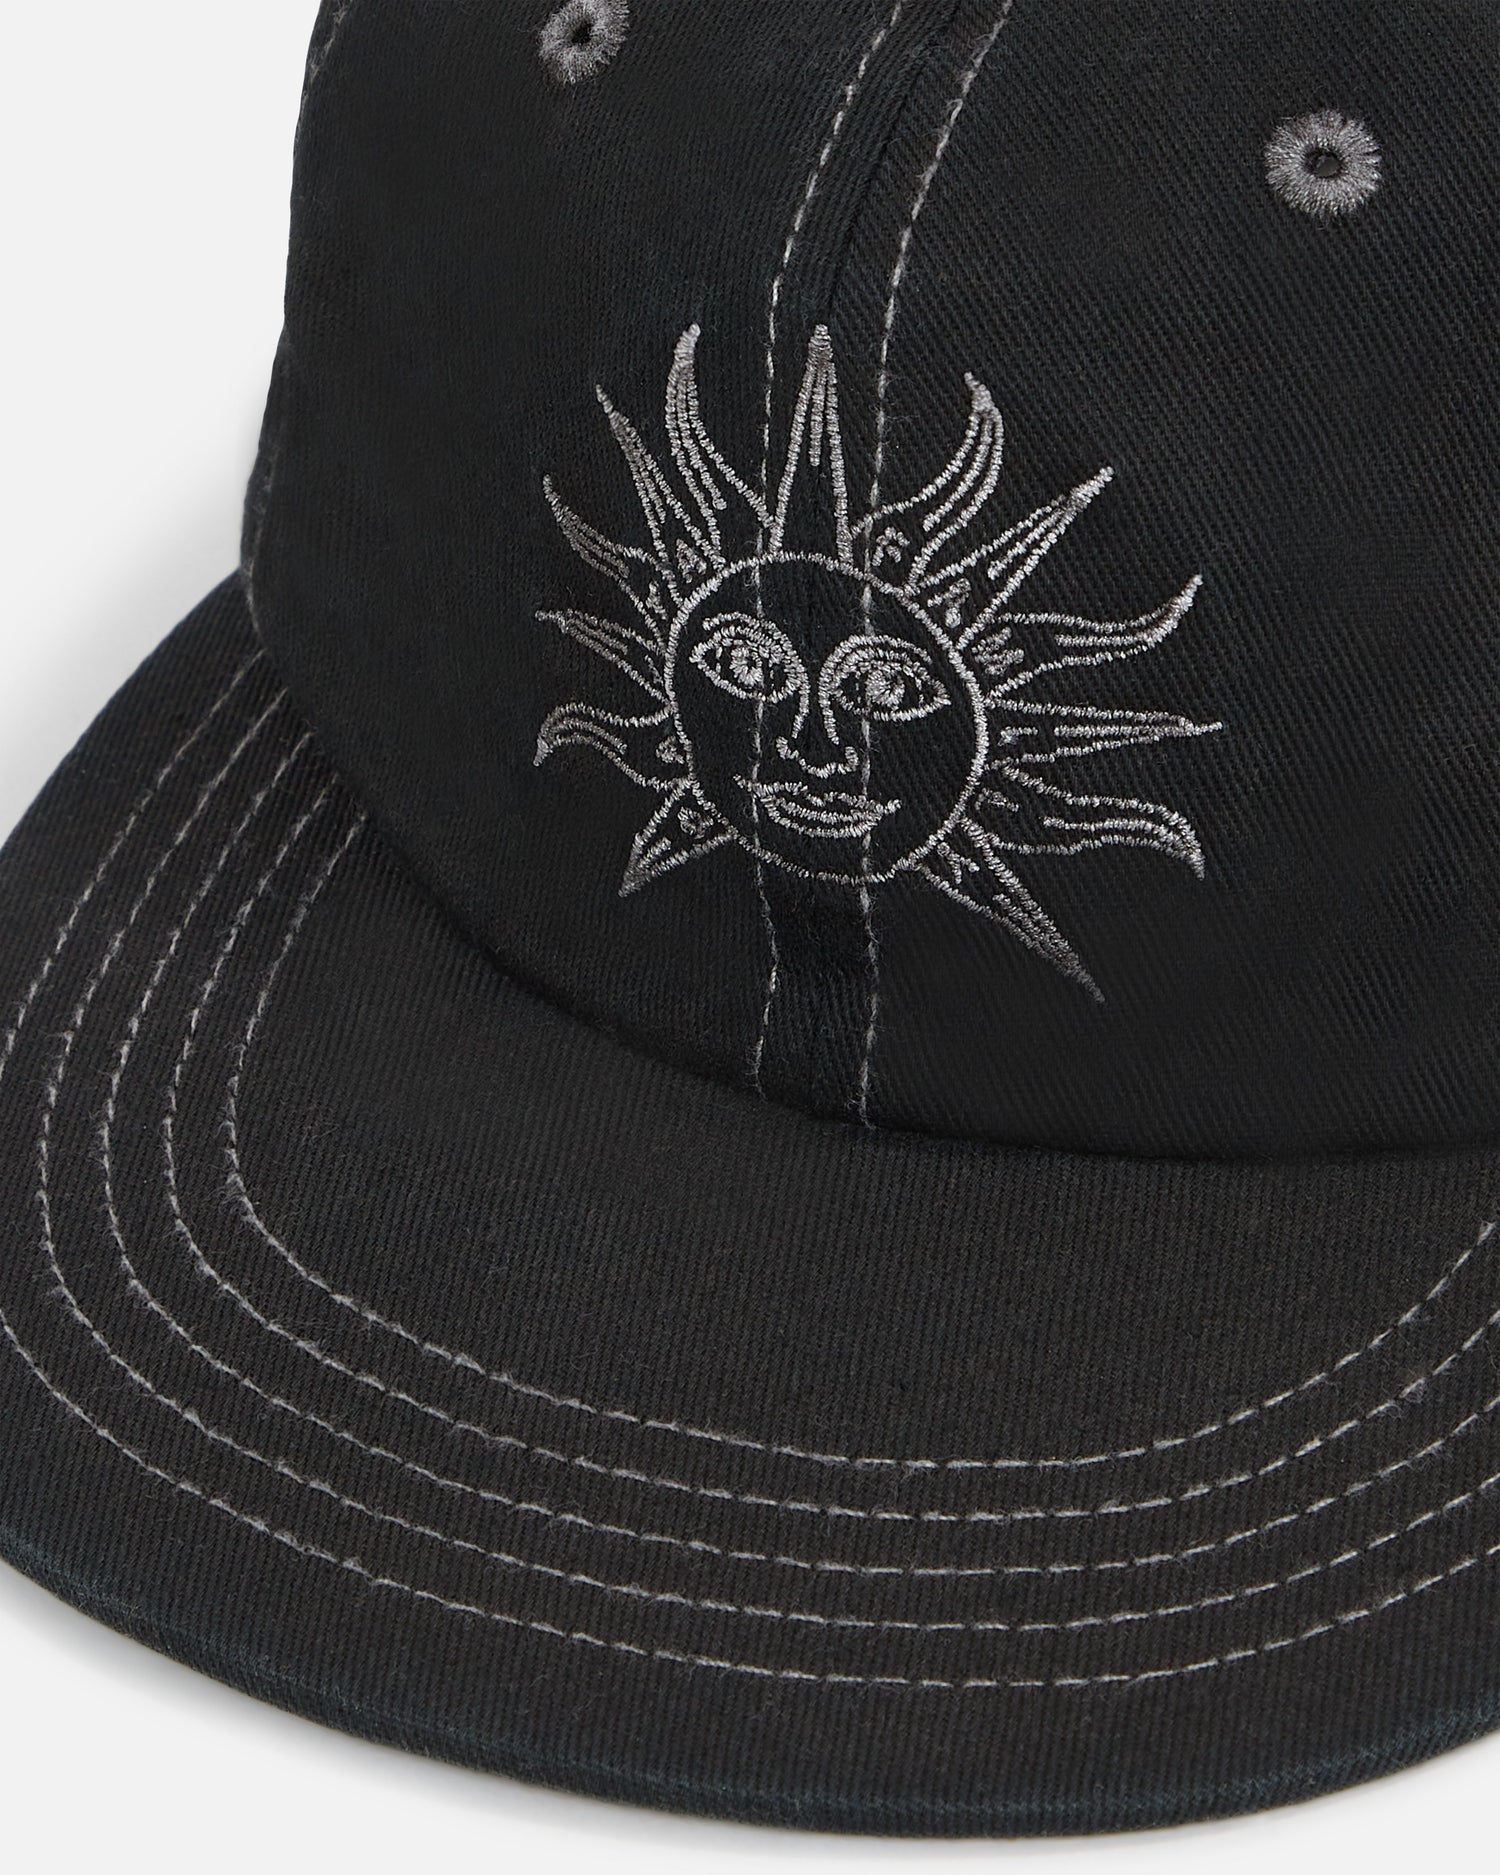 Patta Black Sun Sports Cap (Pirate Black)